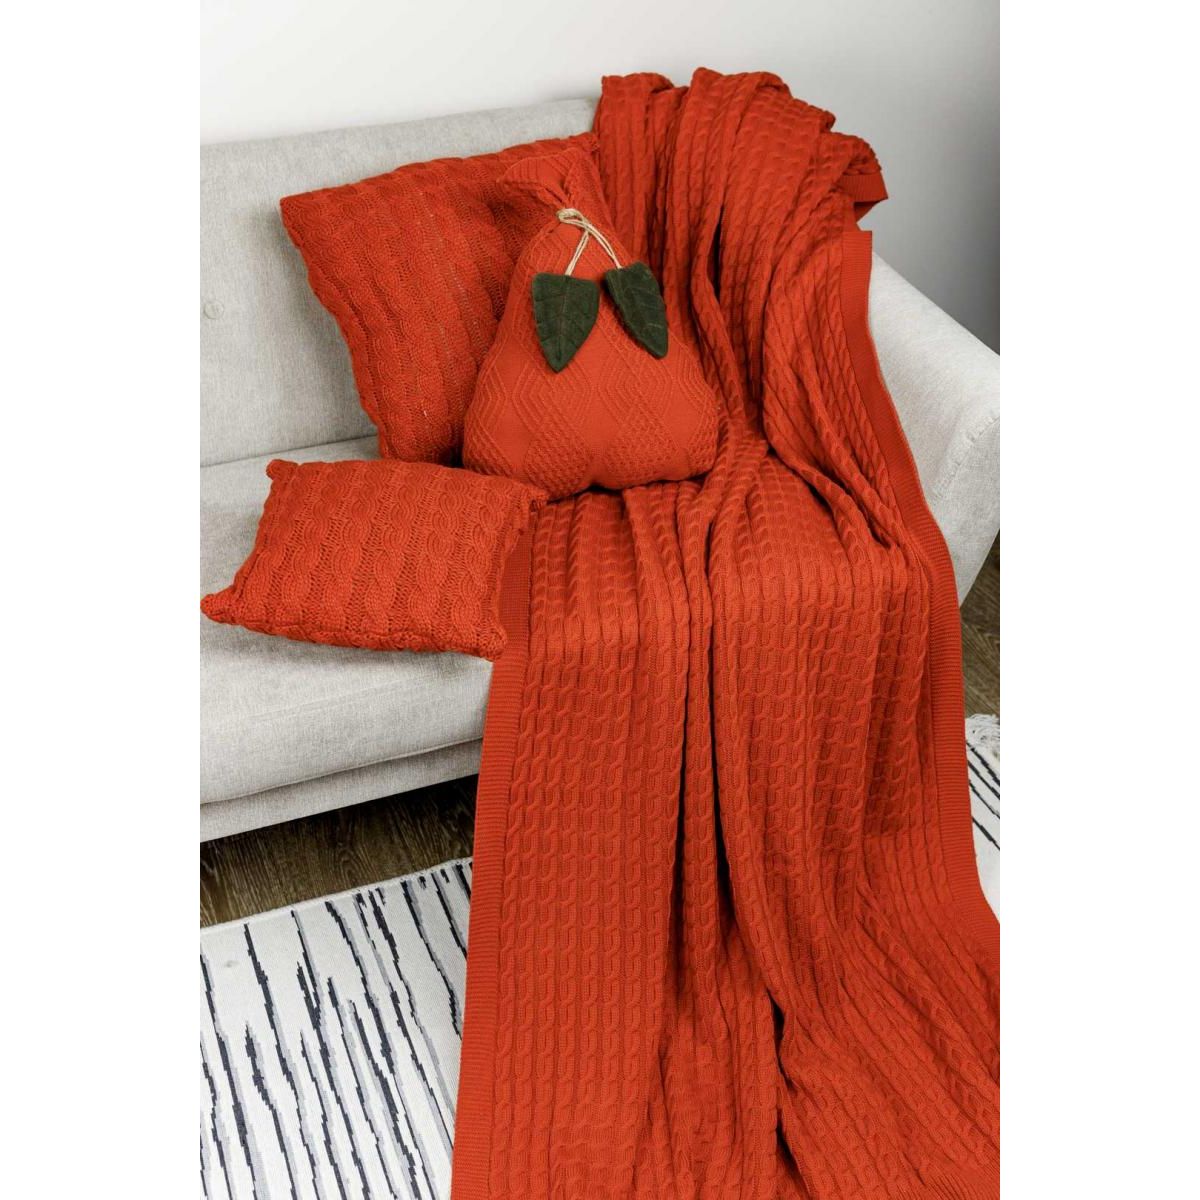 Декоративное текстильное изделие Прованс Подушка-груша, оранжевая, 40 см (30785) - фото 2